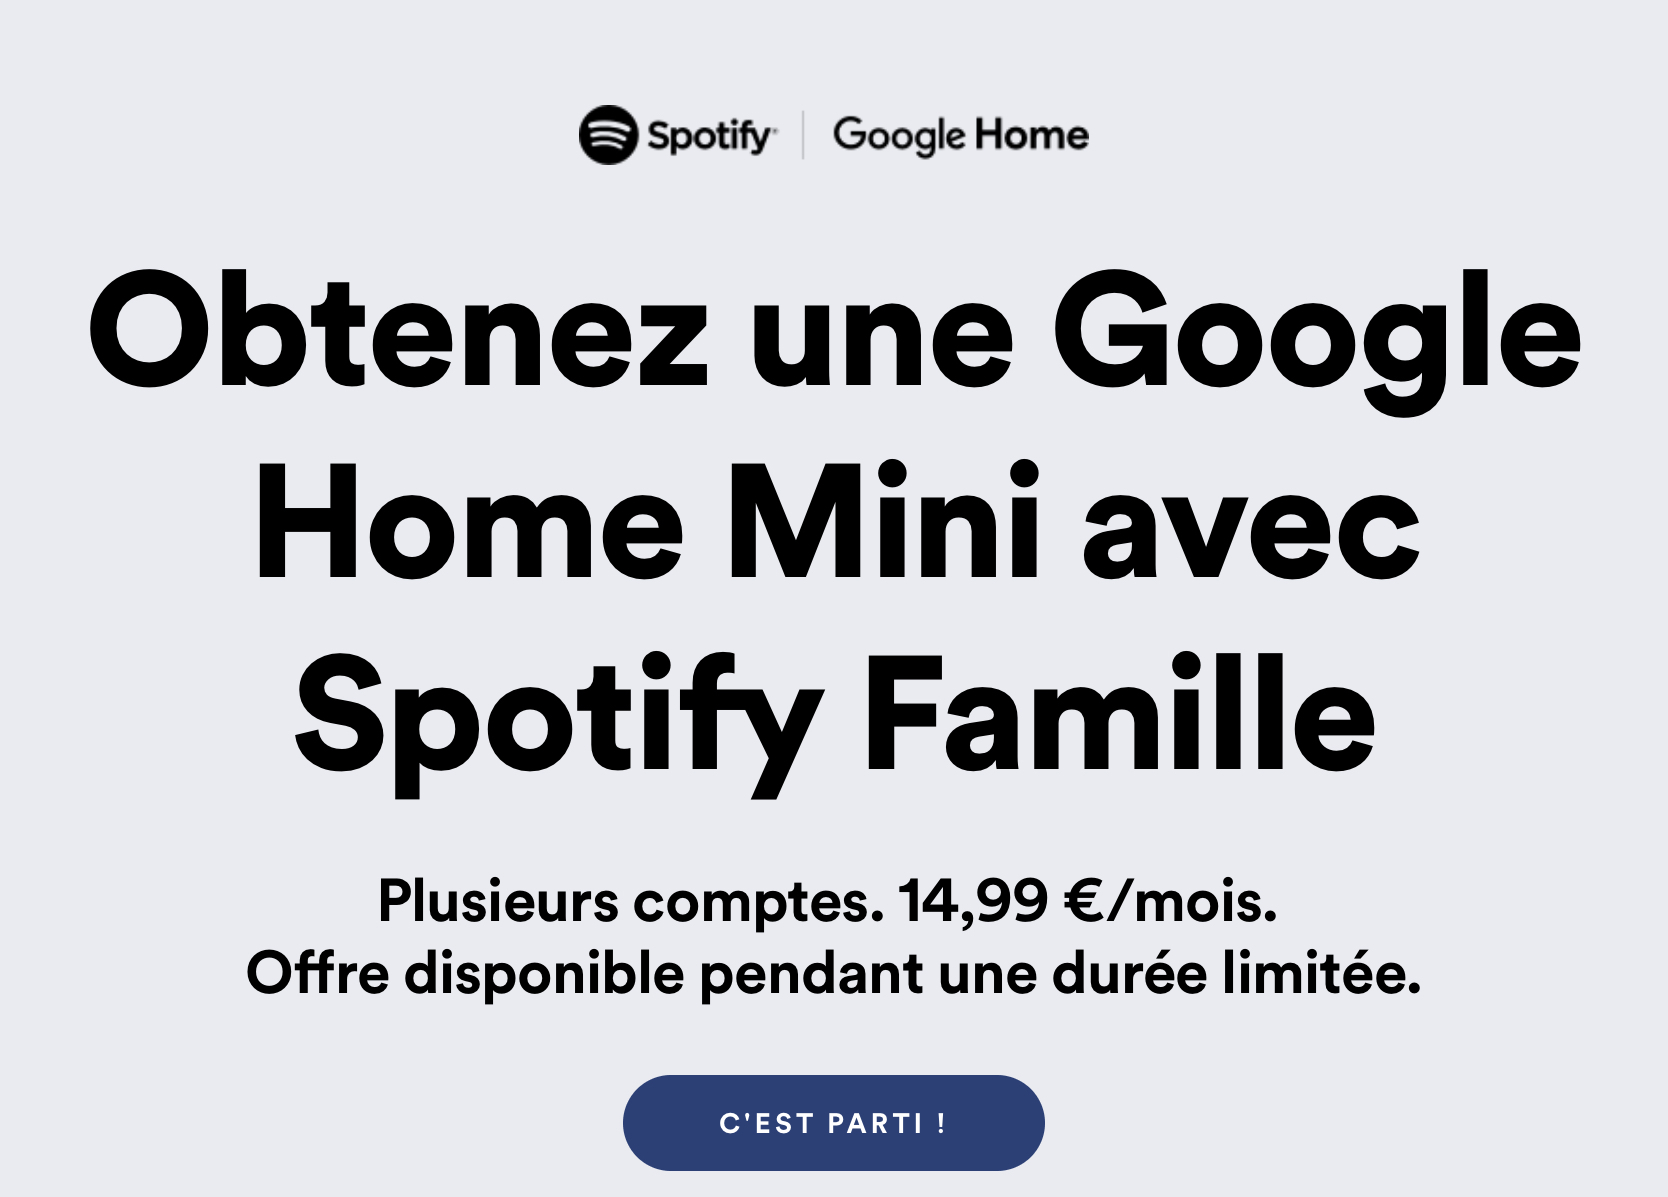 Google Home Mini CCFD614D 8D9F 44EC BAEF 4EEFC4510538 La Google Home Mini est gratuite avec Spotify Famille ! bon plan